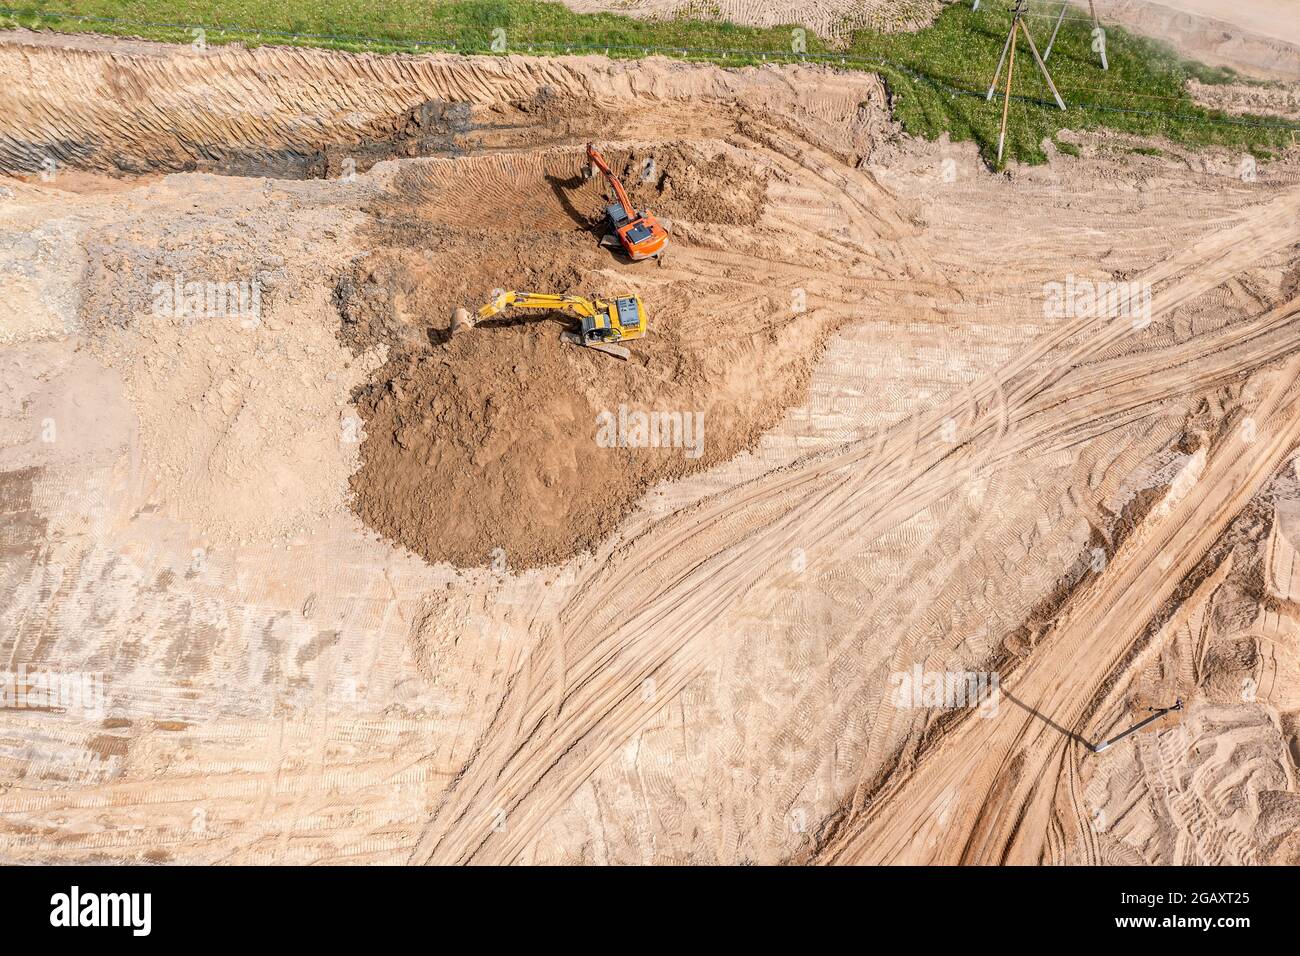 des pelles hydrauliques jaunes et orange lourdes déplacent le sol sur le chantier. vue aérienne du dessus Banque D'Images